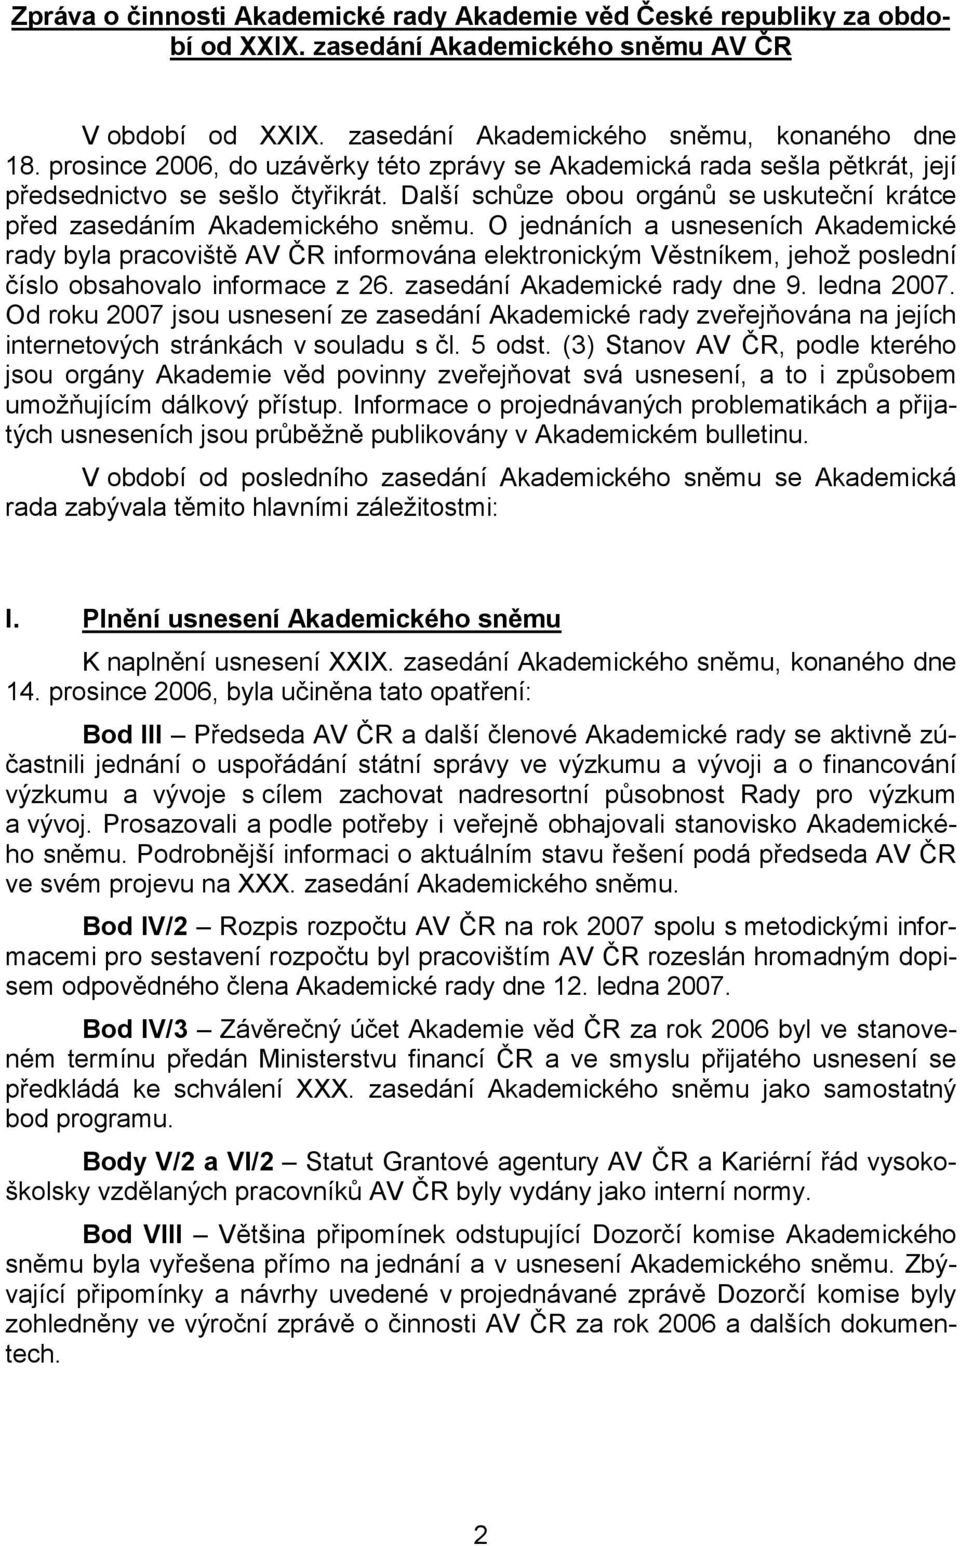 O jednáních a usneseních Akademické rady byla pracoviště AV ČR informována elektronickým Věstníkem, jehož poslední číslo obsahovalo informace z 26. zasedání Akademické rady dne 9. ledna 2007.